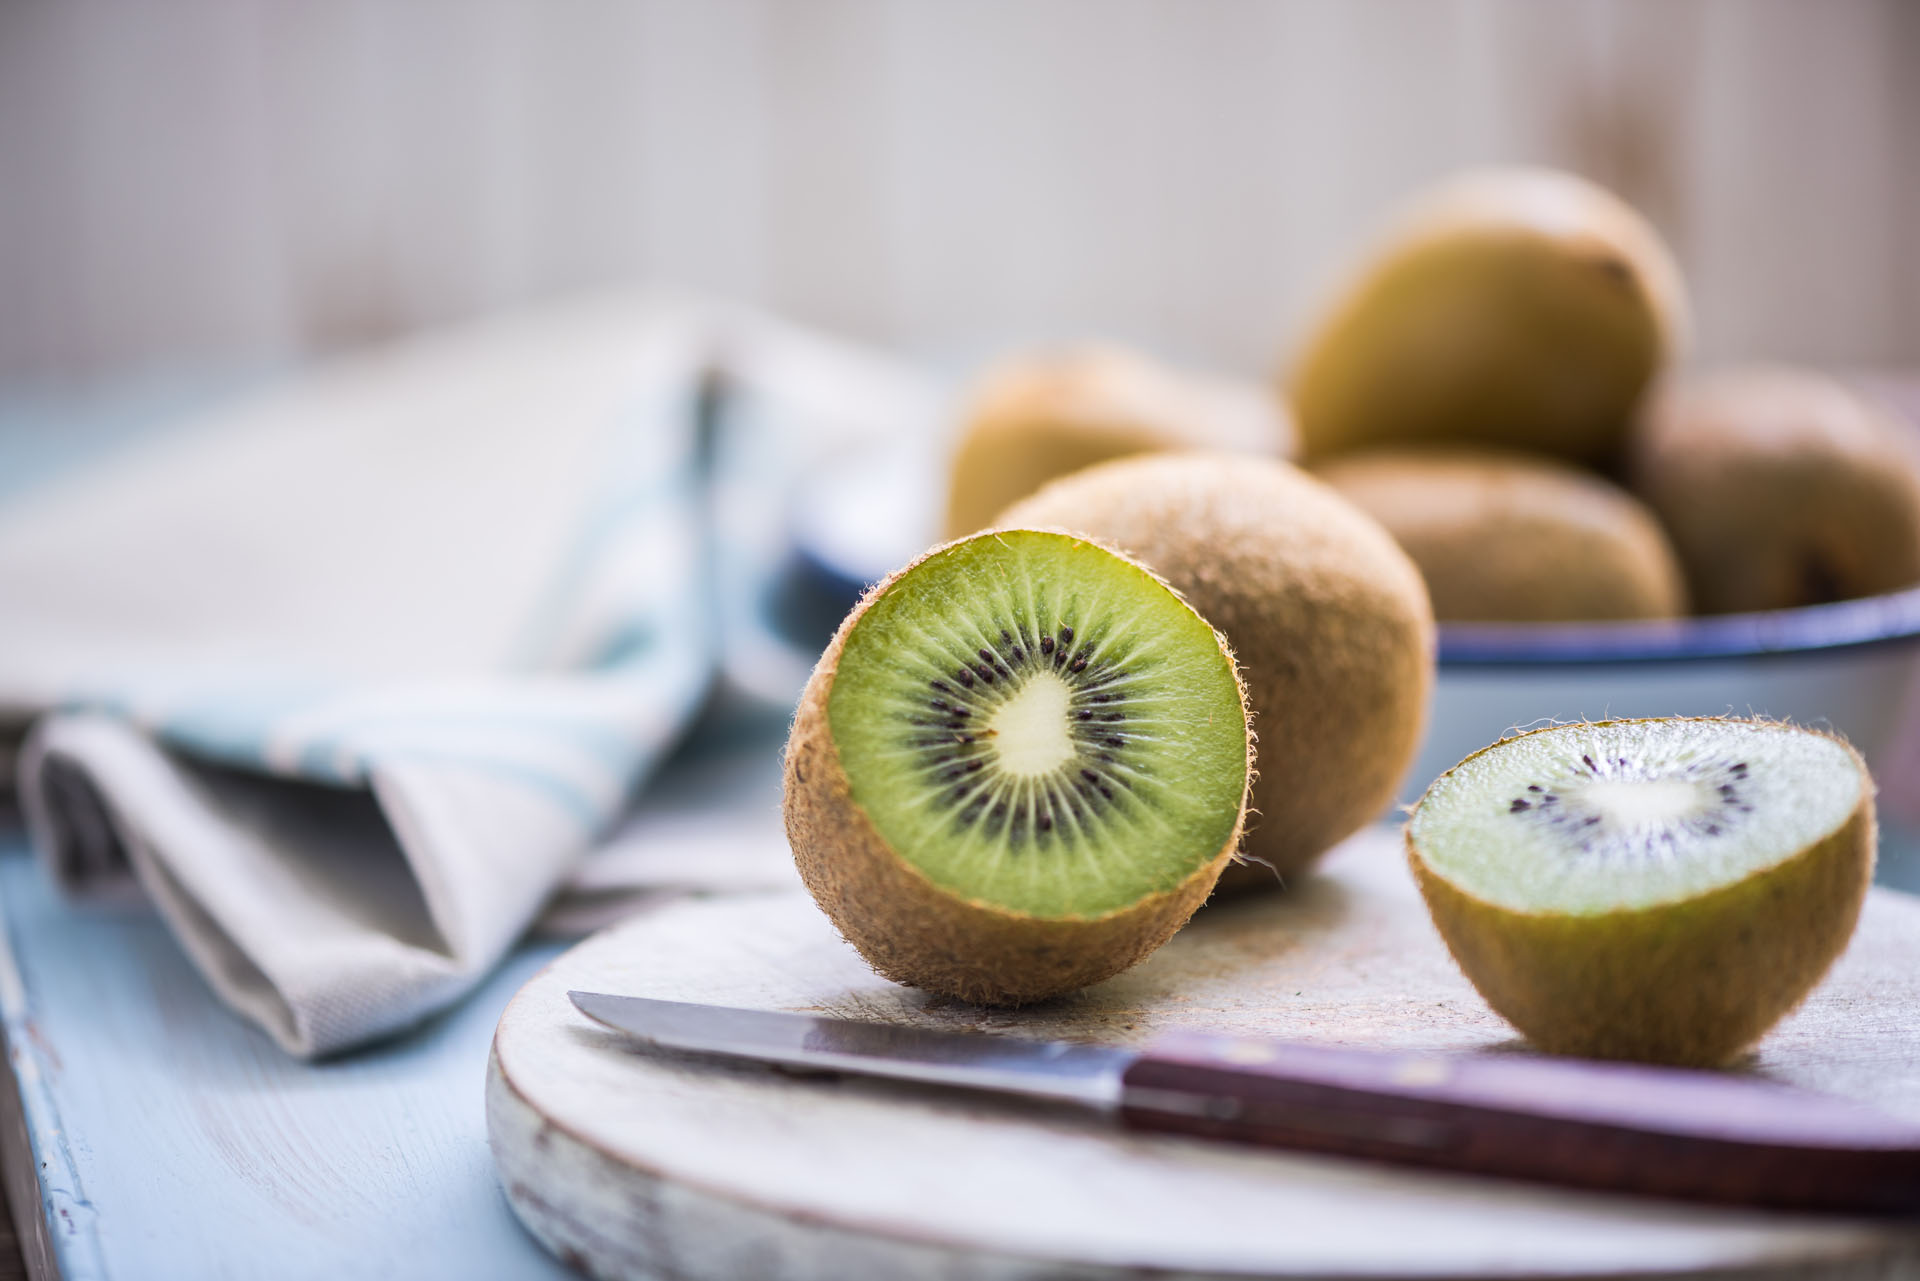 Los kiwis pueden consumirse enteros como postre, picados con otras frutas o en licuados  (Getty)